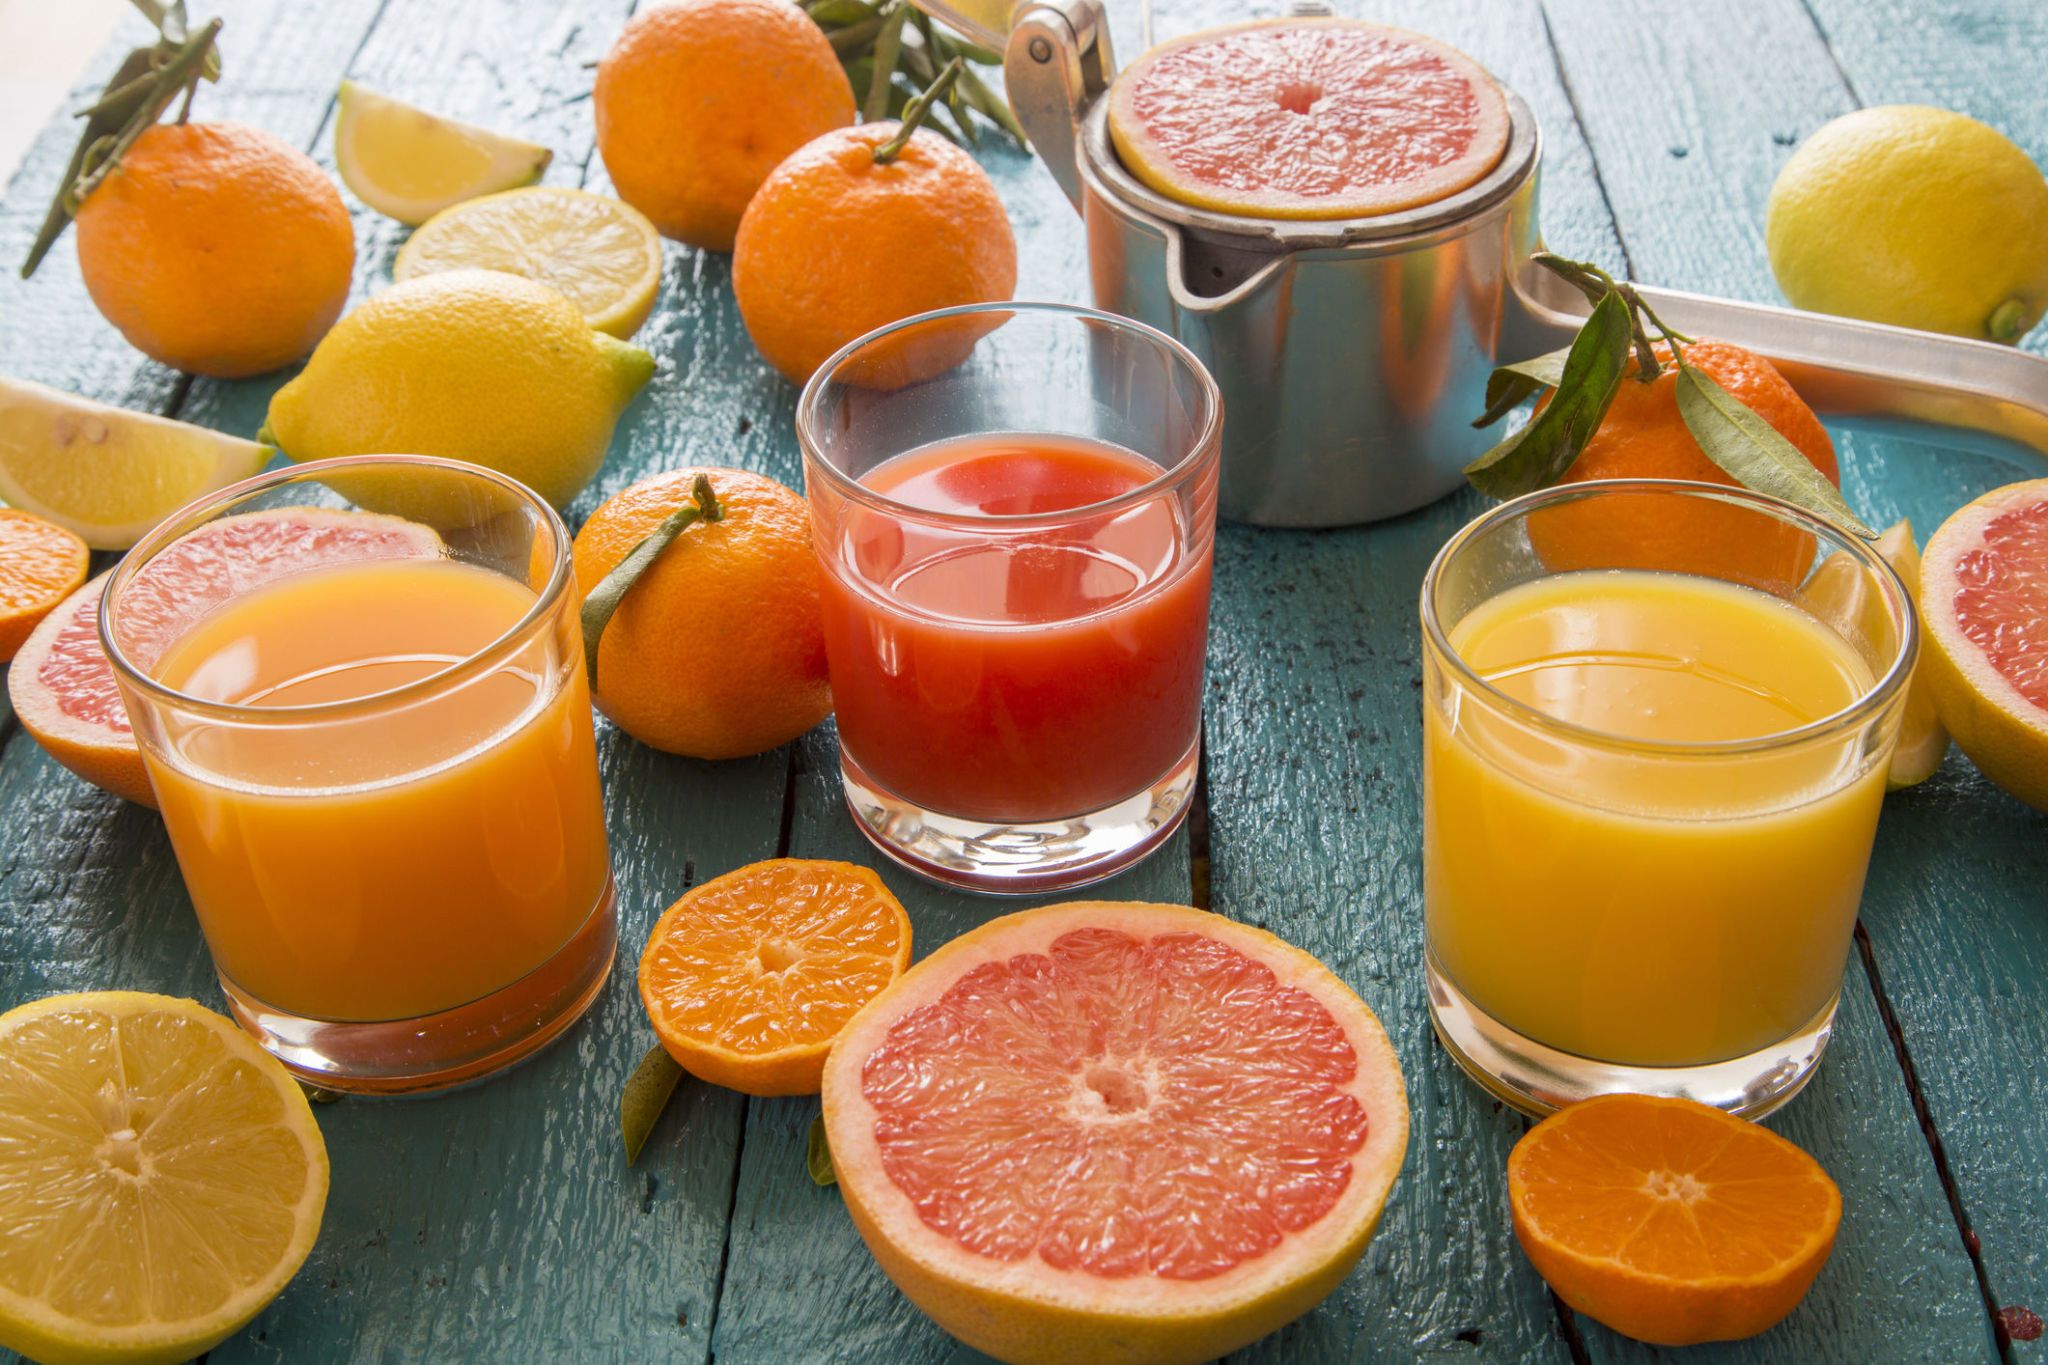 calorie e benefici della spremuta d'arancia, uno spuntino salutare e ricco di vitamine